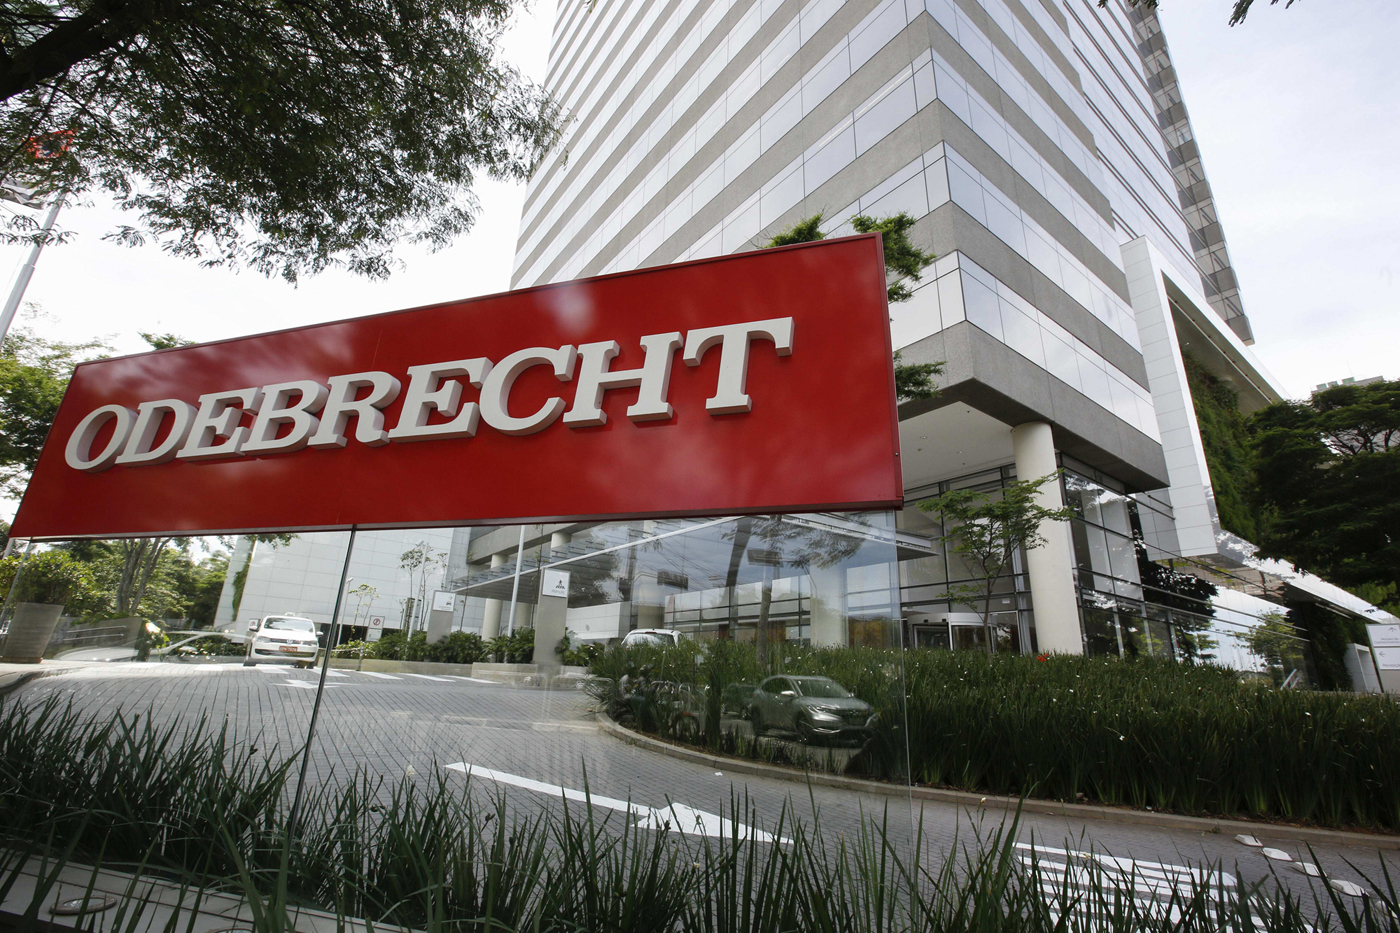 Documentos revelan 45 pagos ilegales de Odebrecht en Perú por más de 10 millones de dólares